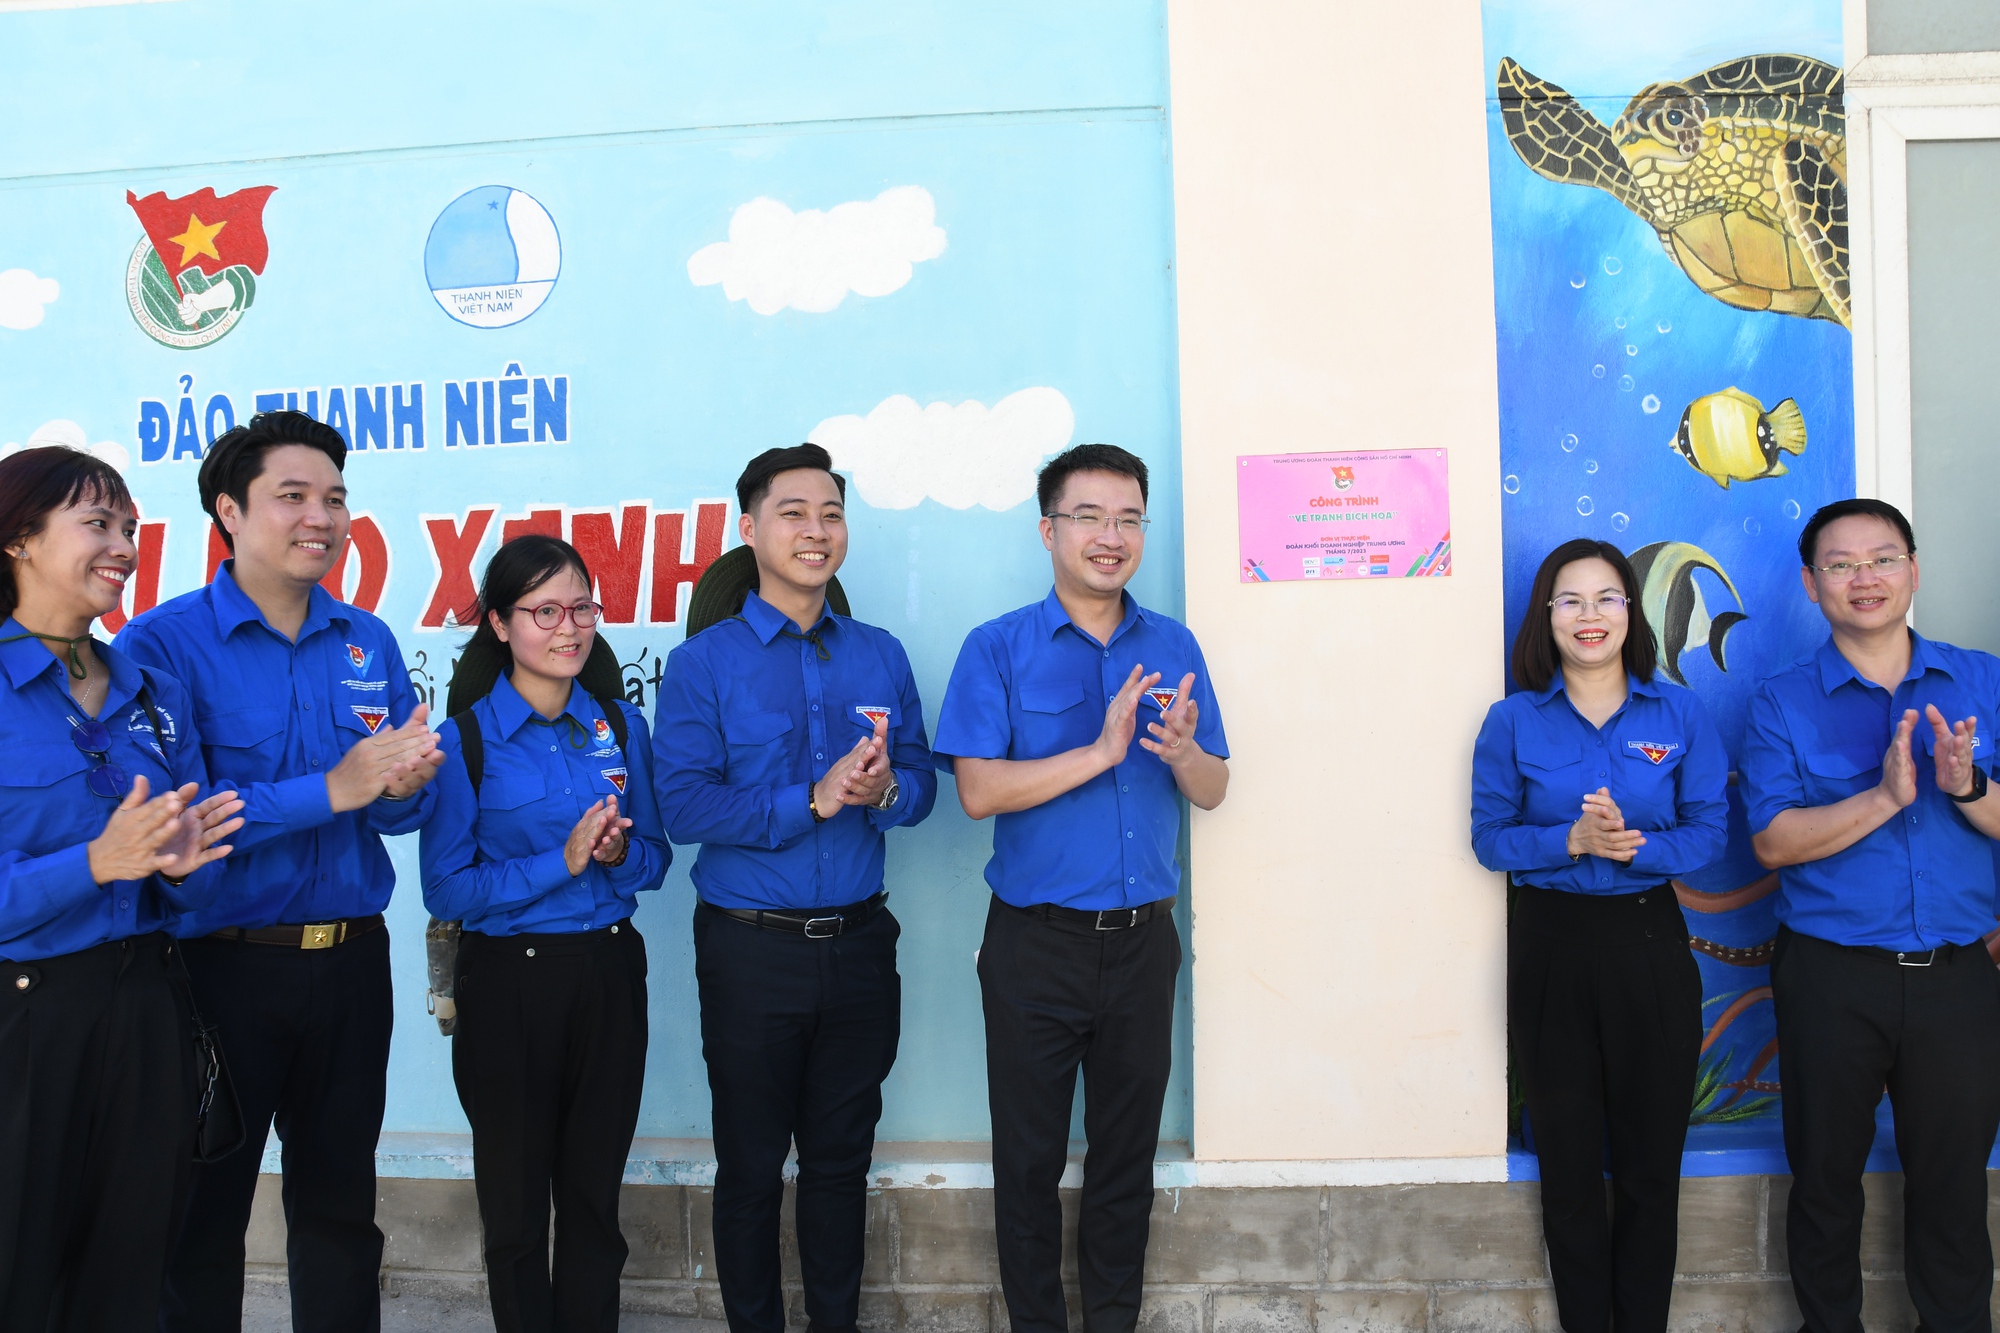 Chiến dịch tình nguyện Kỳ nghỉ hồng ra Đảo Thanh niên Cù Lao Xanh - Ảnh 16.